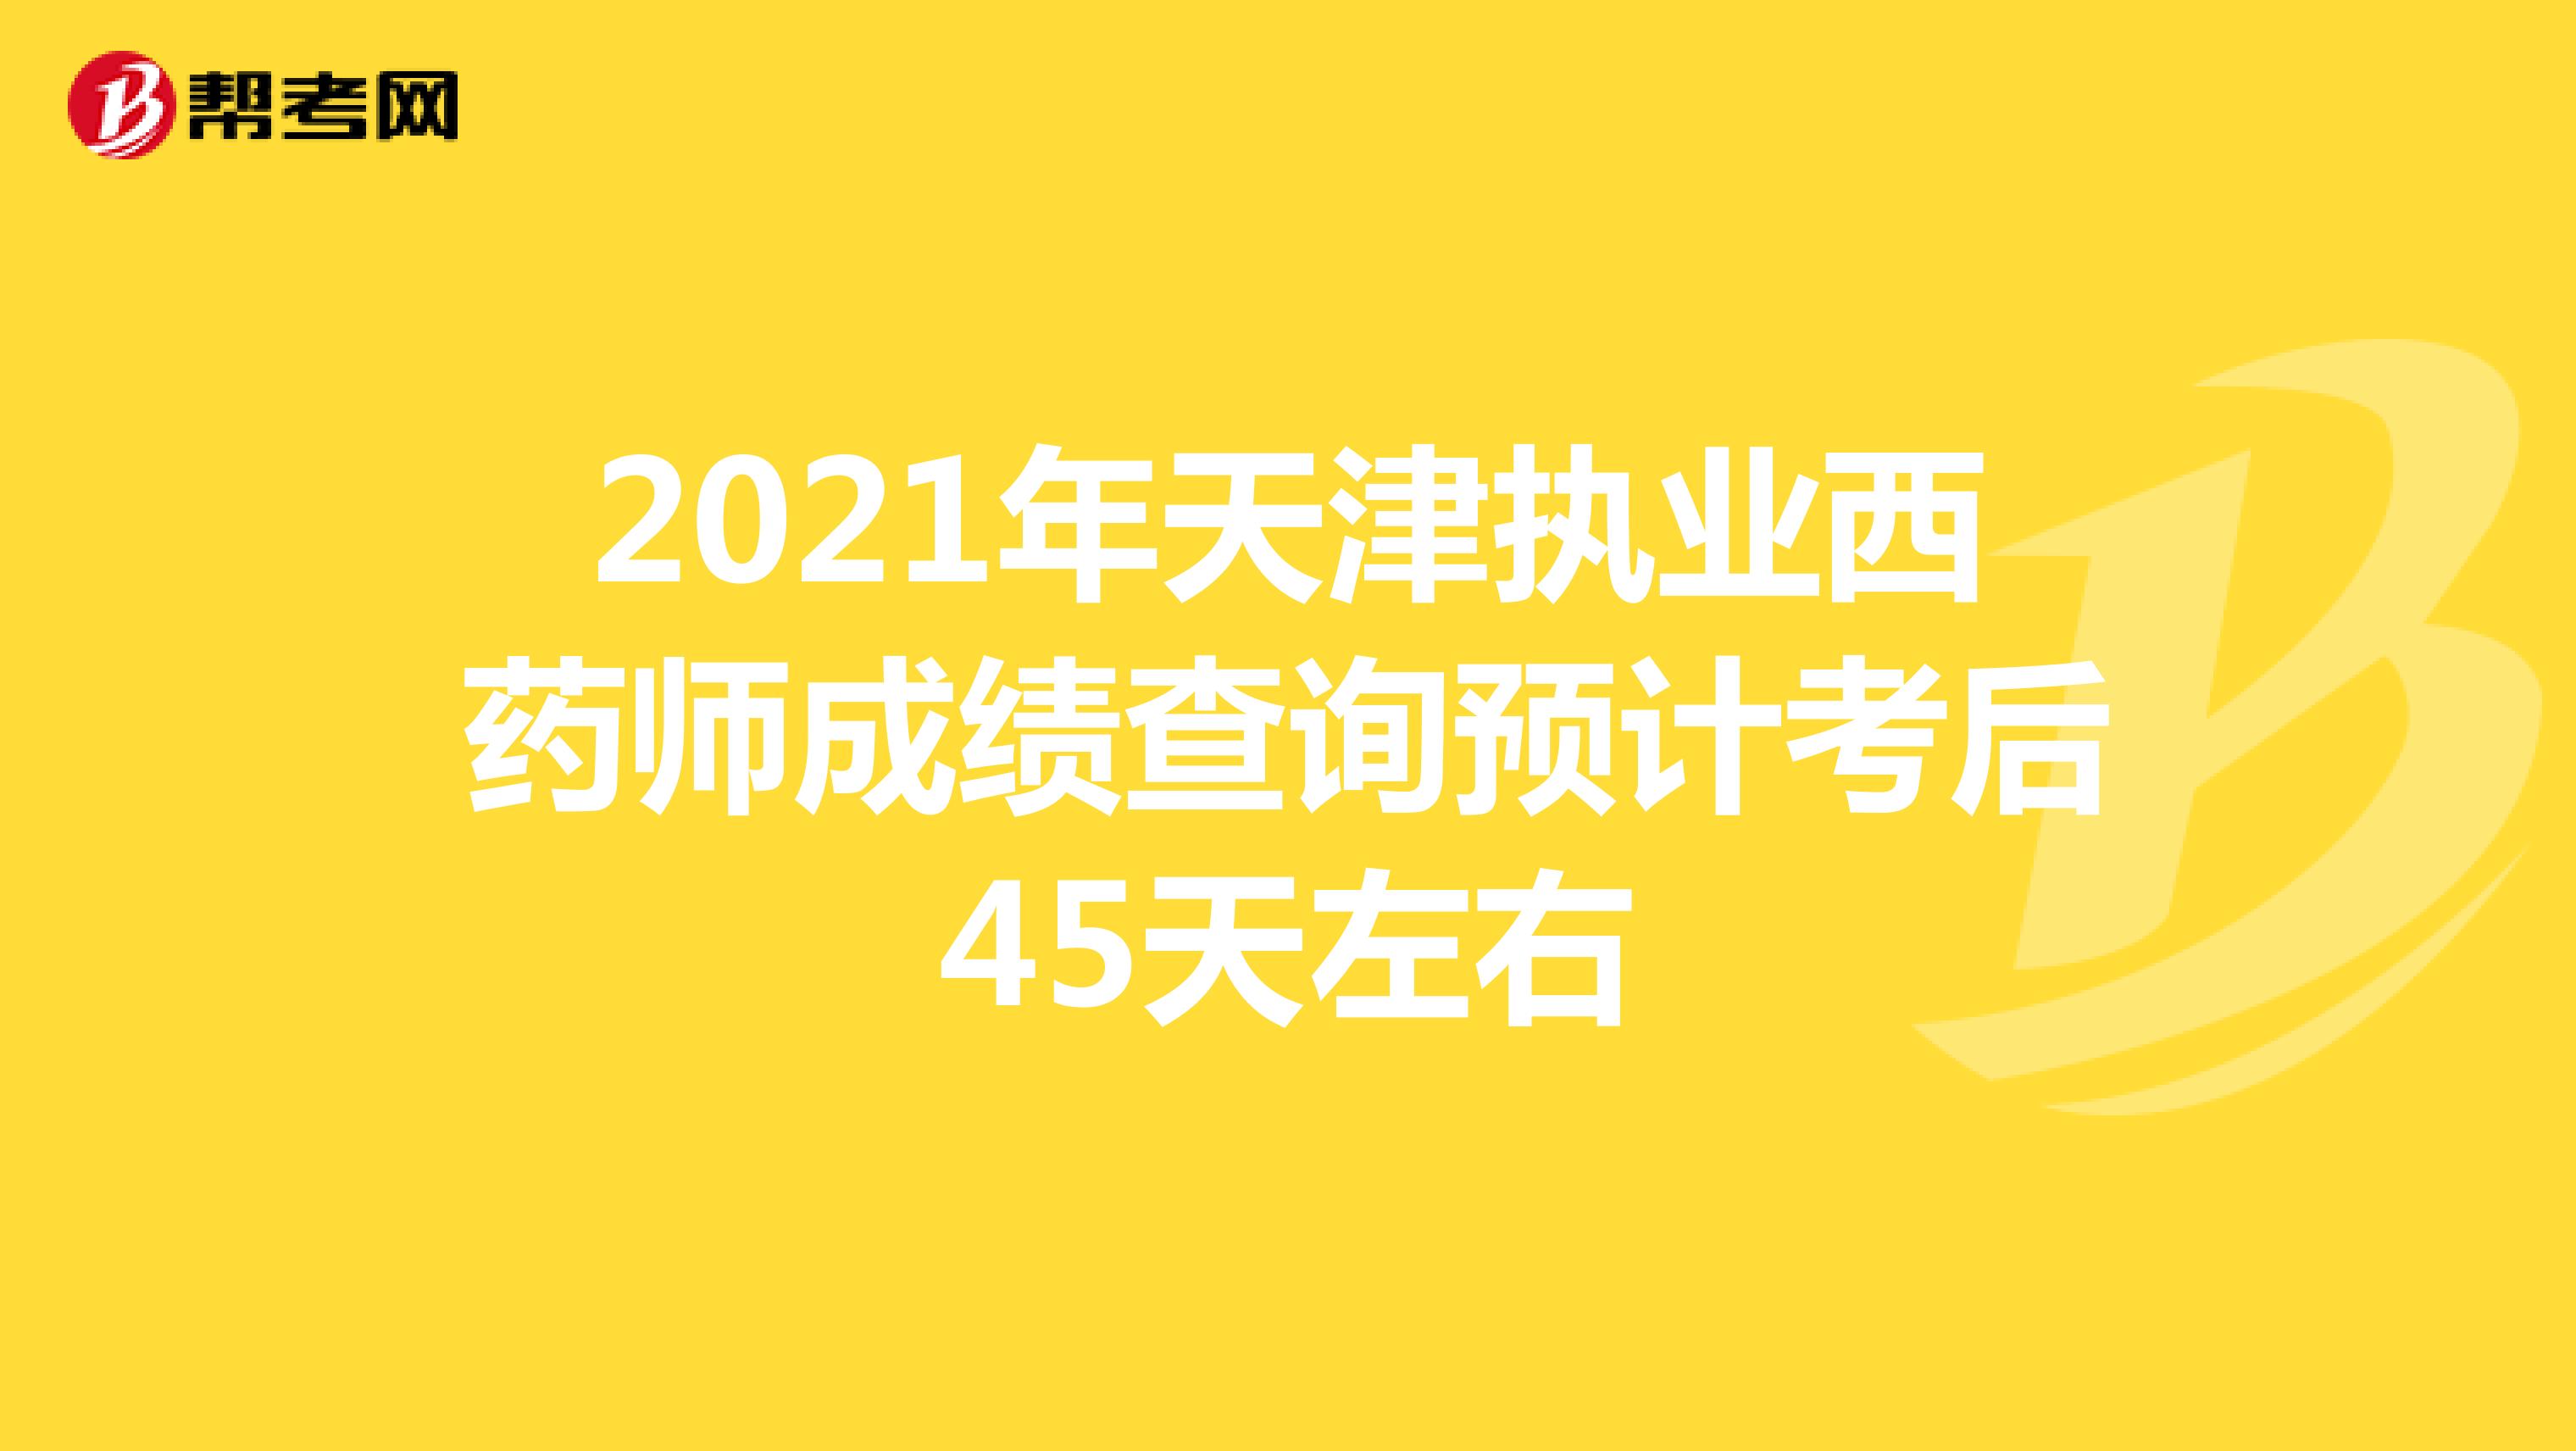 2021年天津执业西药师成绩查询预计考后45天左右